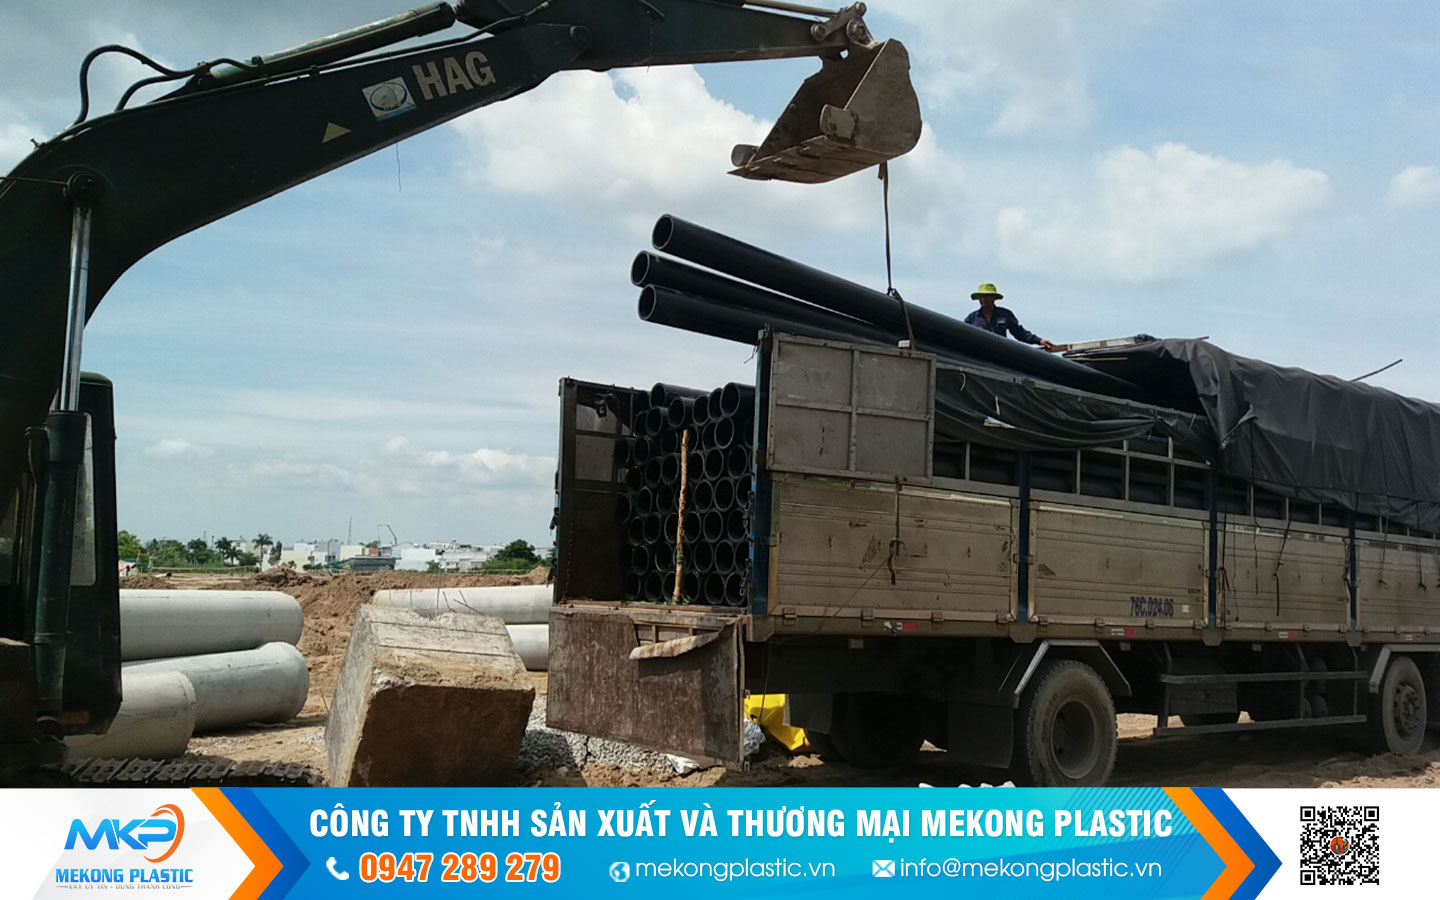 Cách lựa chọn ống nhựa HDPE phù hợp mục đích sử dụng Ống Nhựa HDPE Mekong Plastic Dành Cho Hệ Thống Tưới Và Cấp Thoát Nước